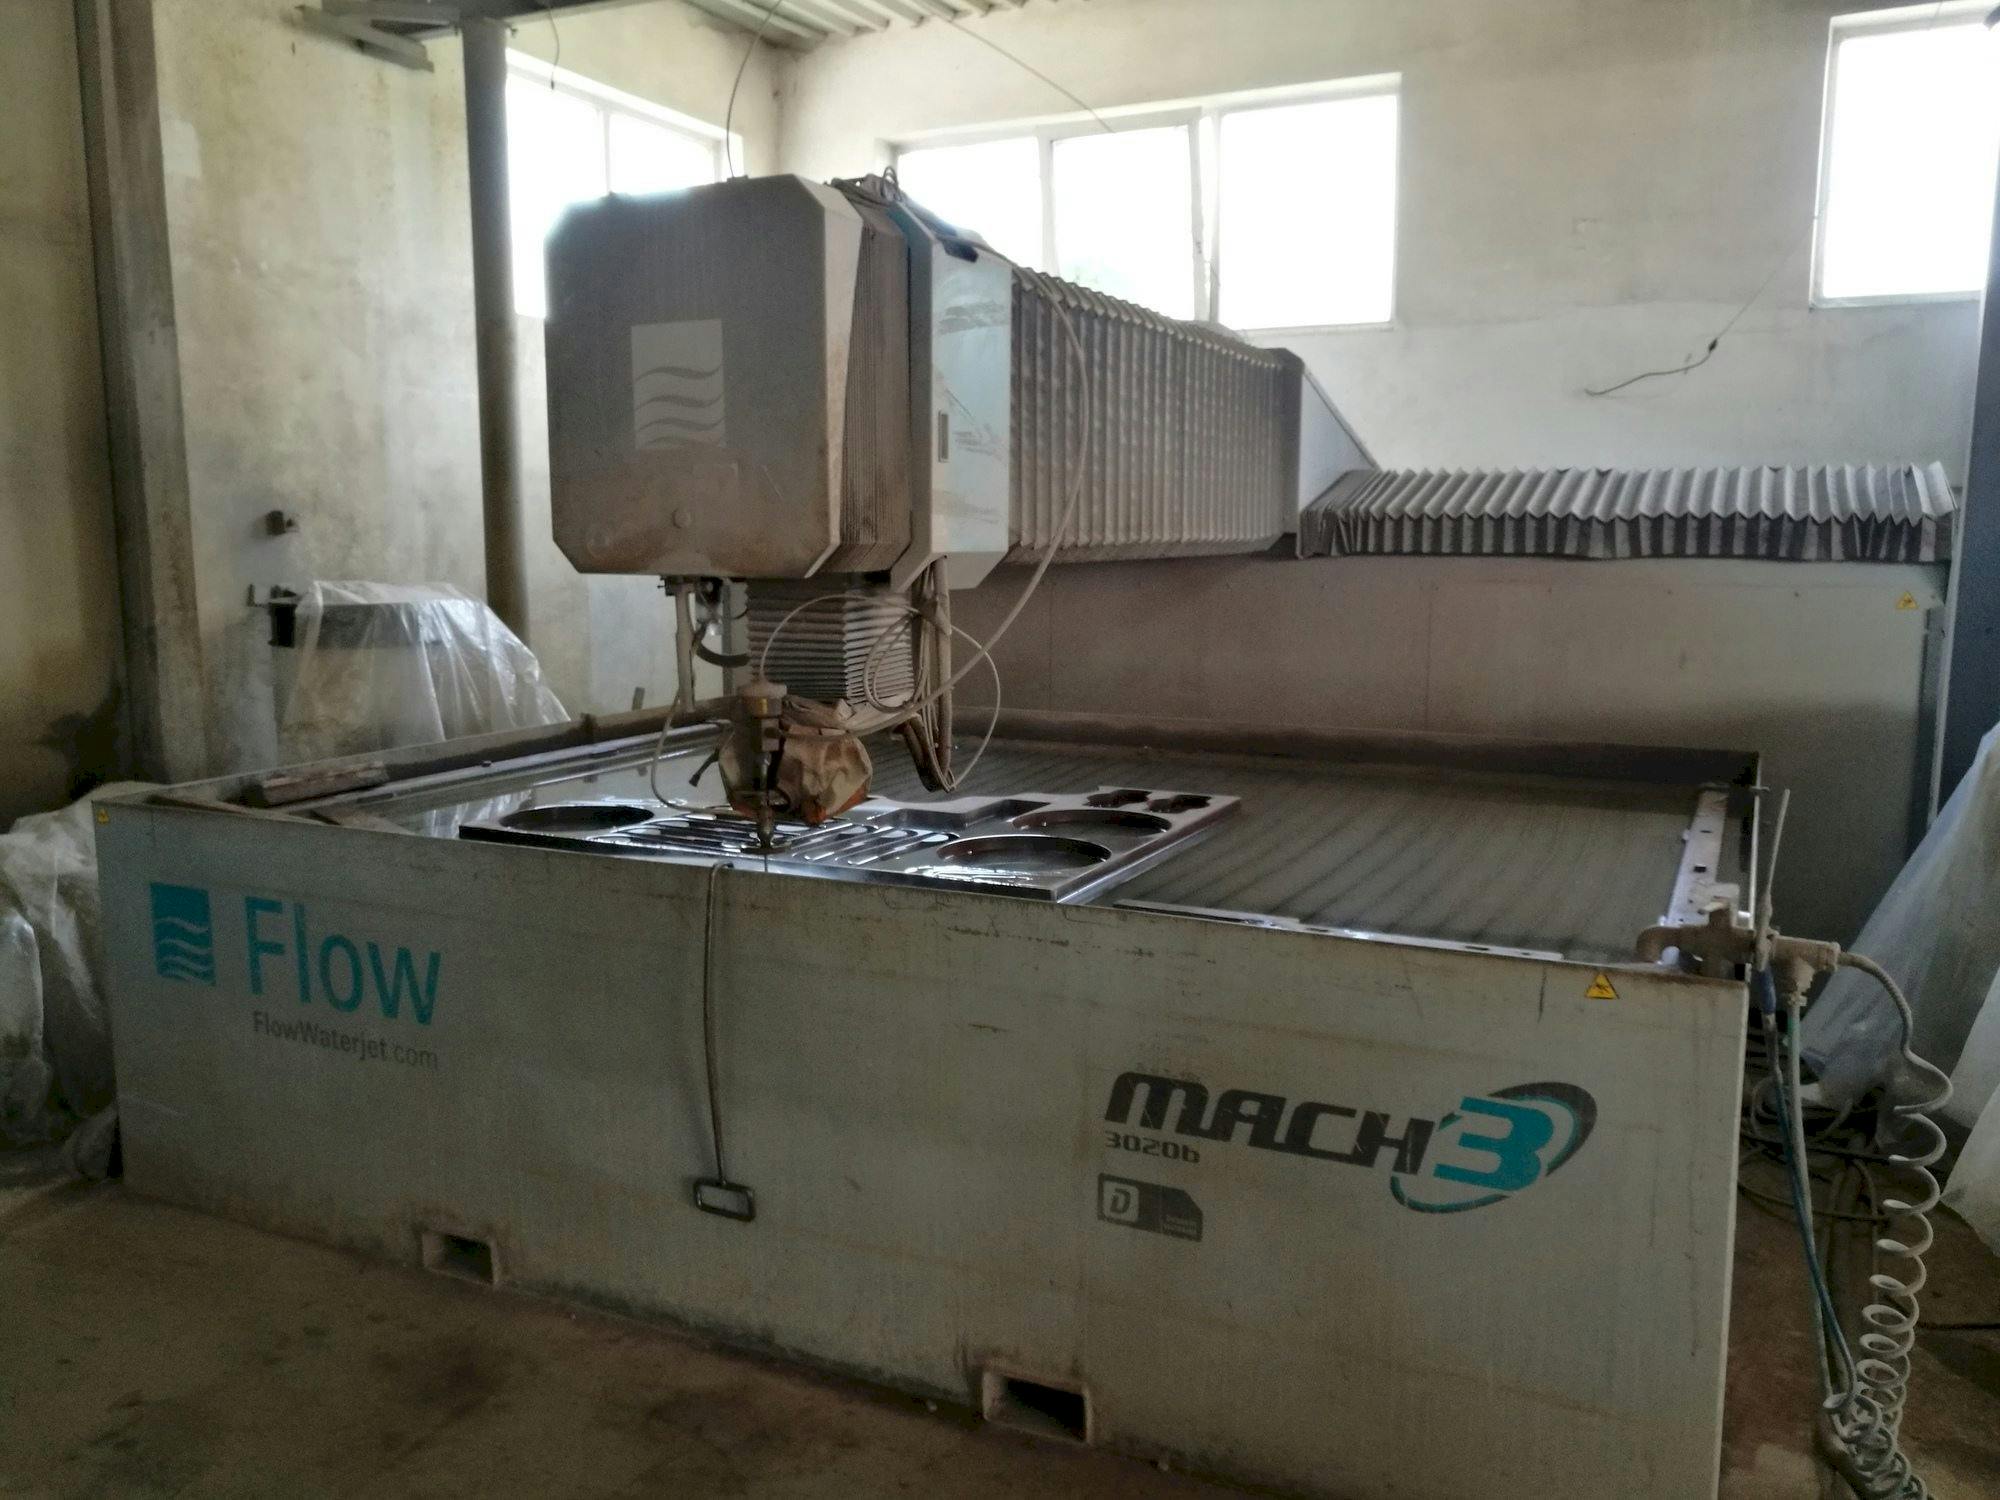 Frontansicht der Flow Mach3-3020b  Maschine